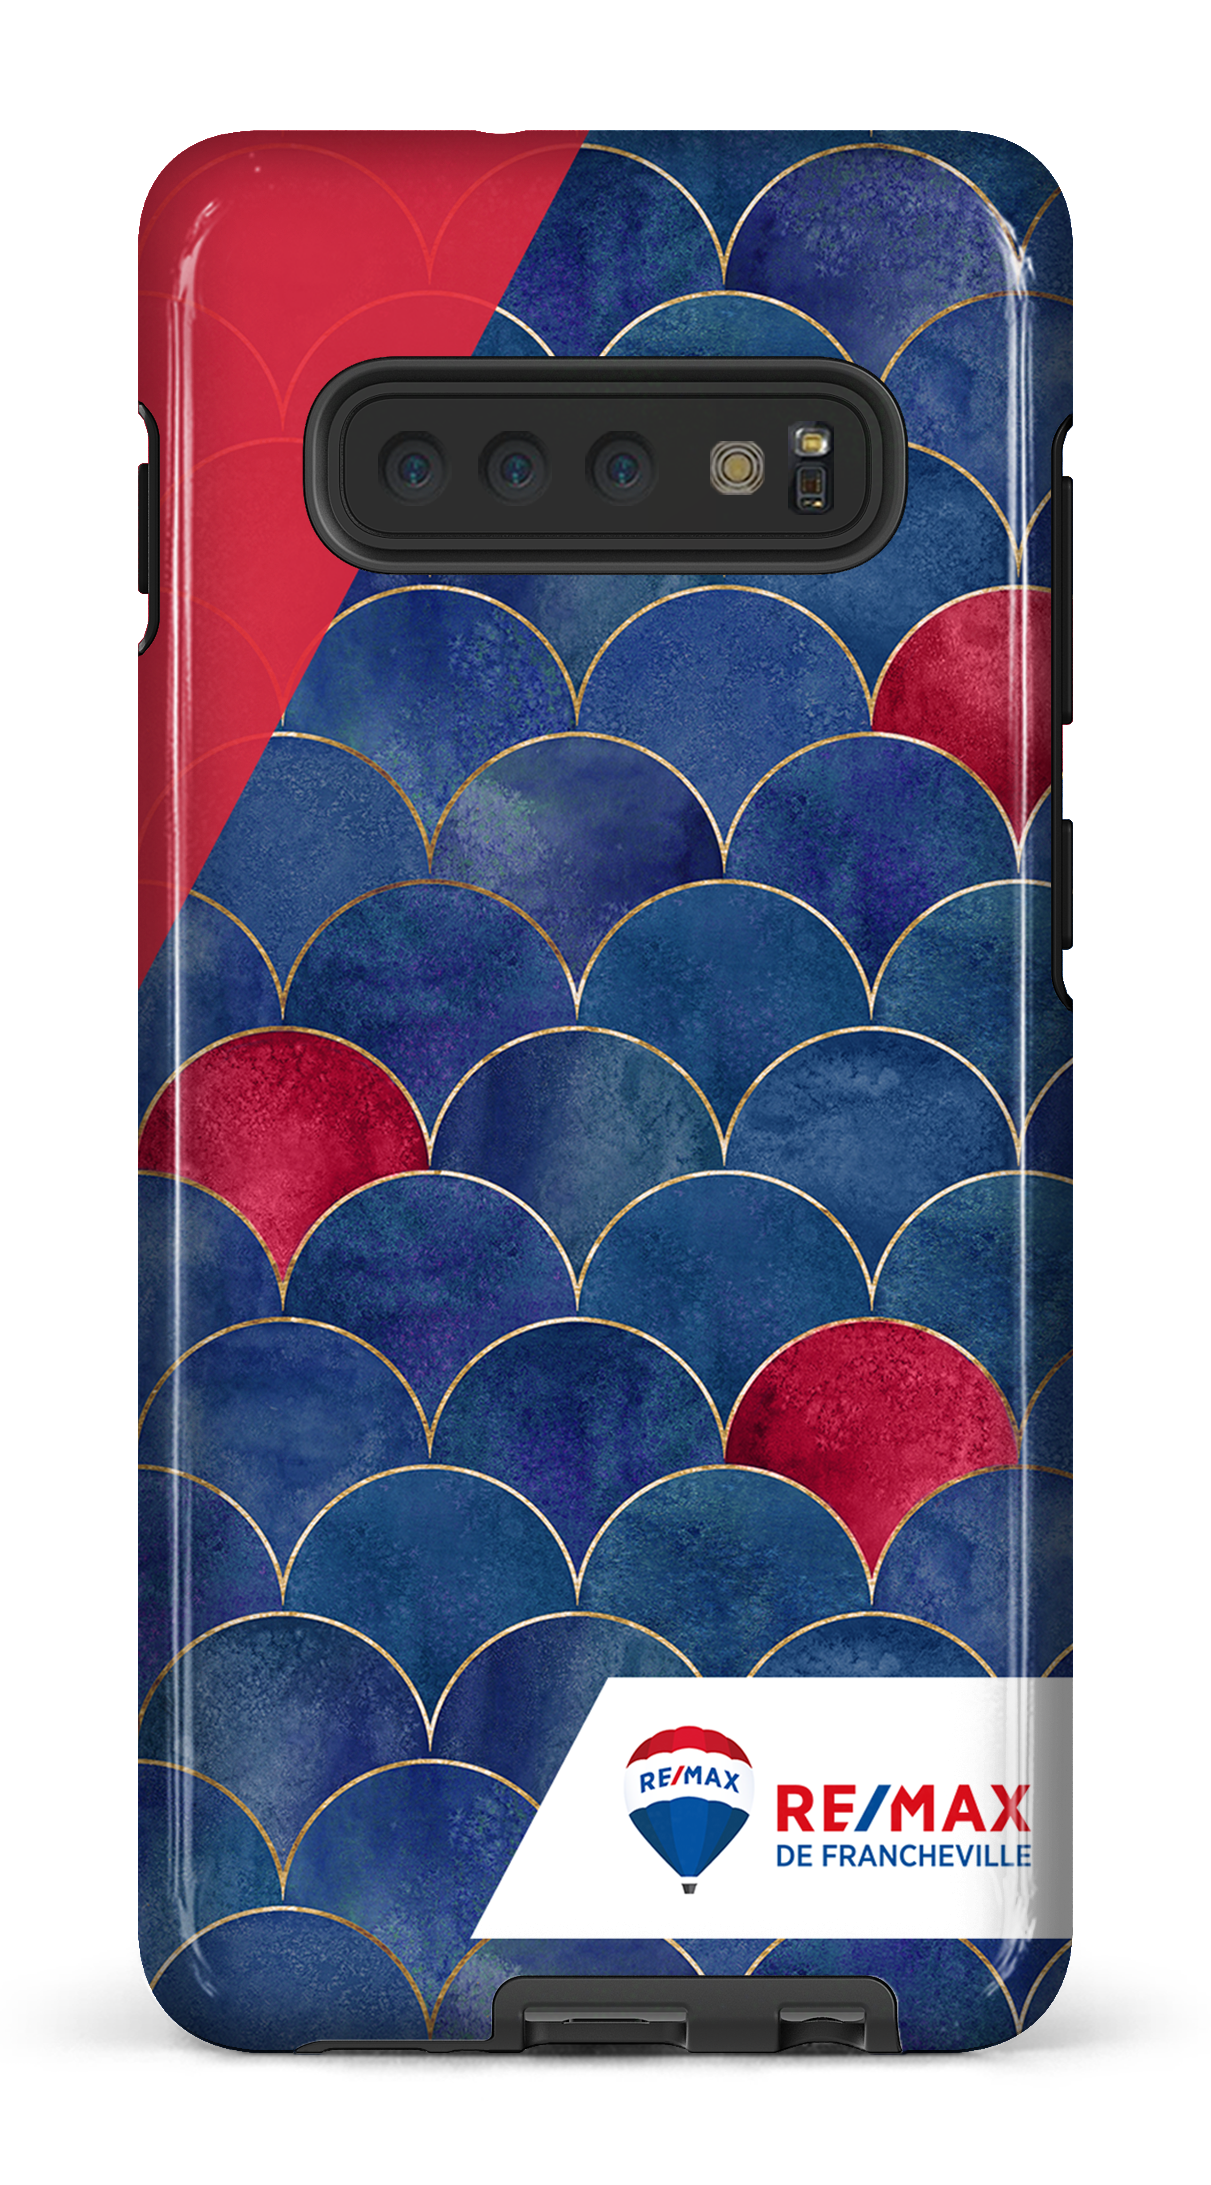 Écailles bicolores de Francheville - Galaxy S10 Plus